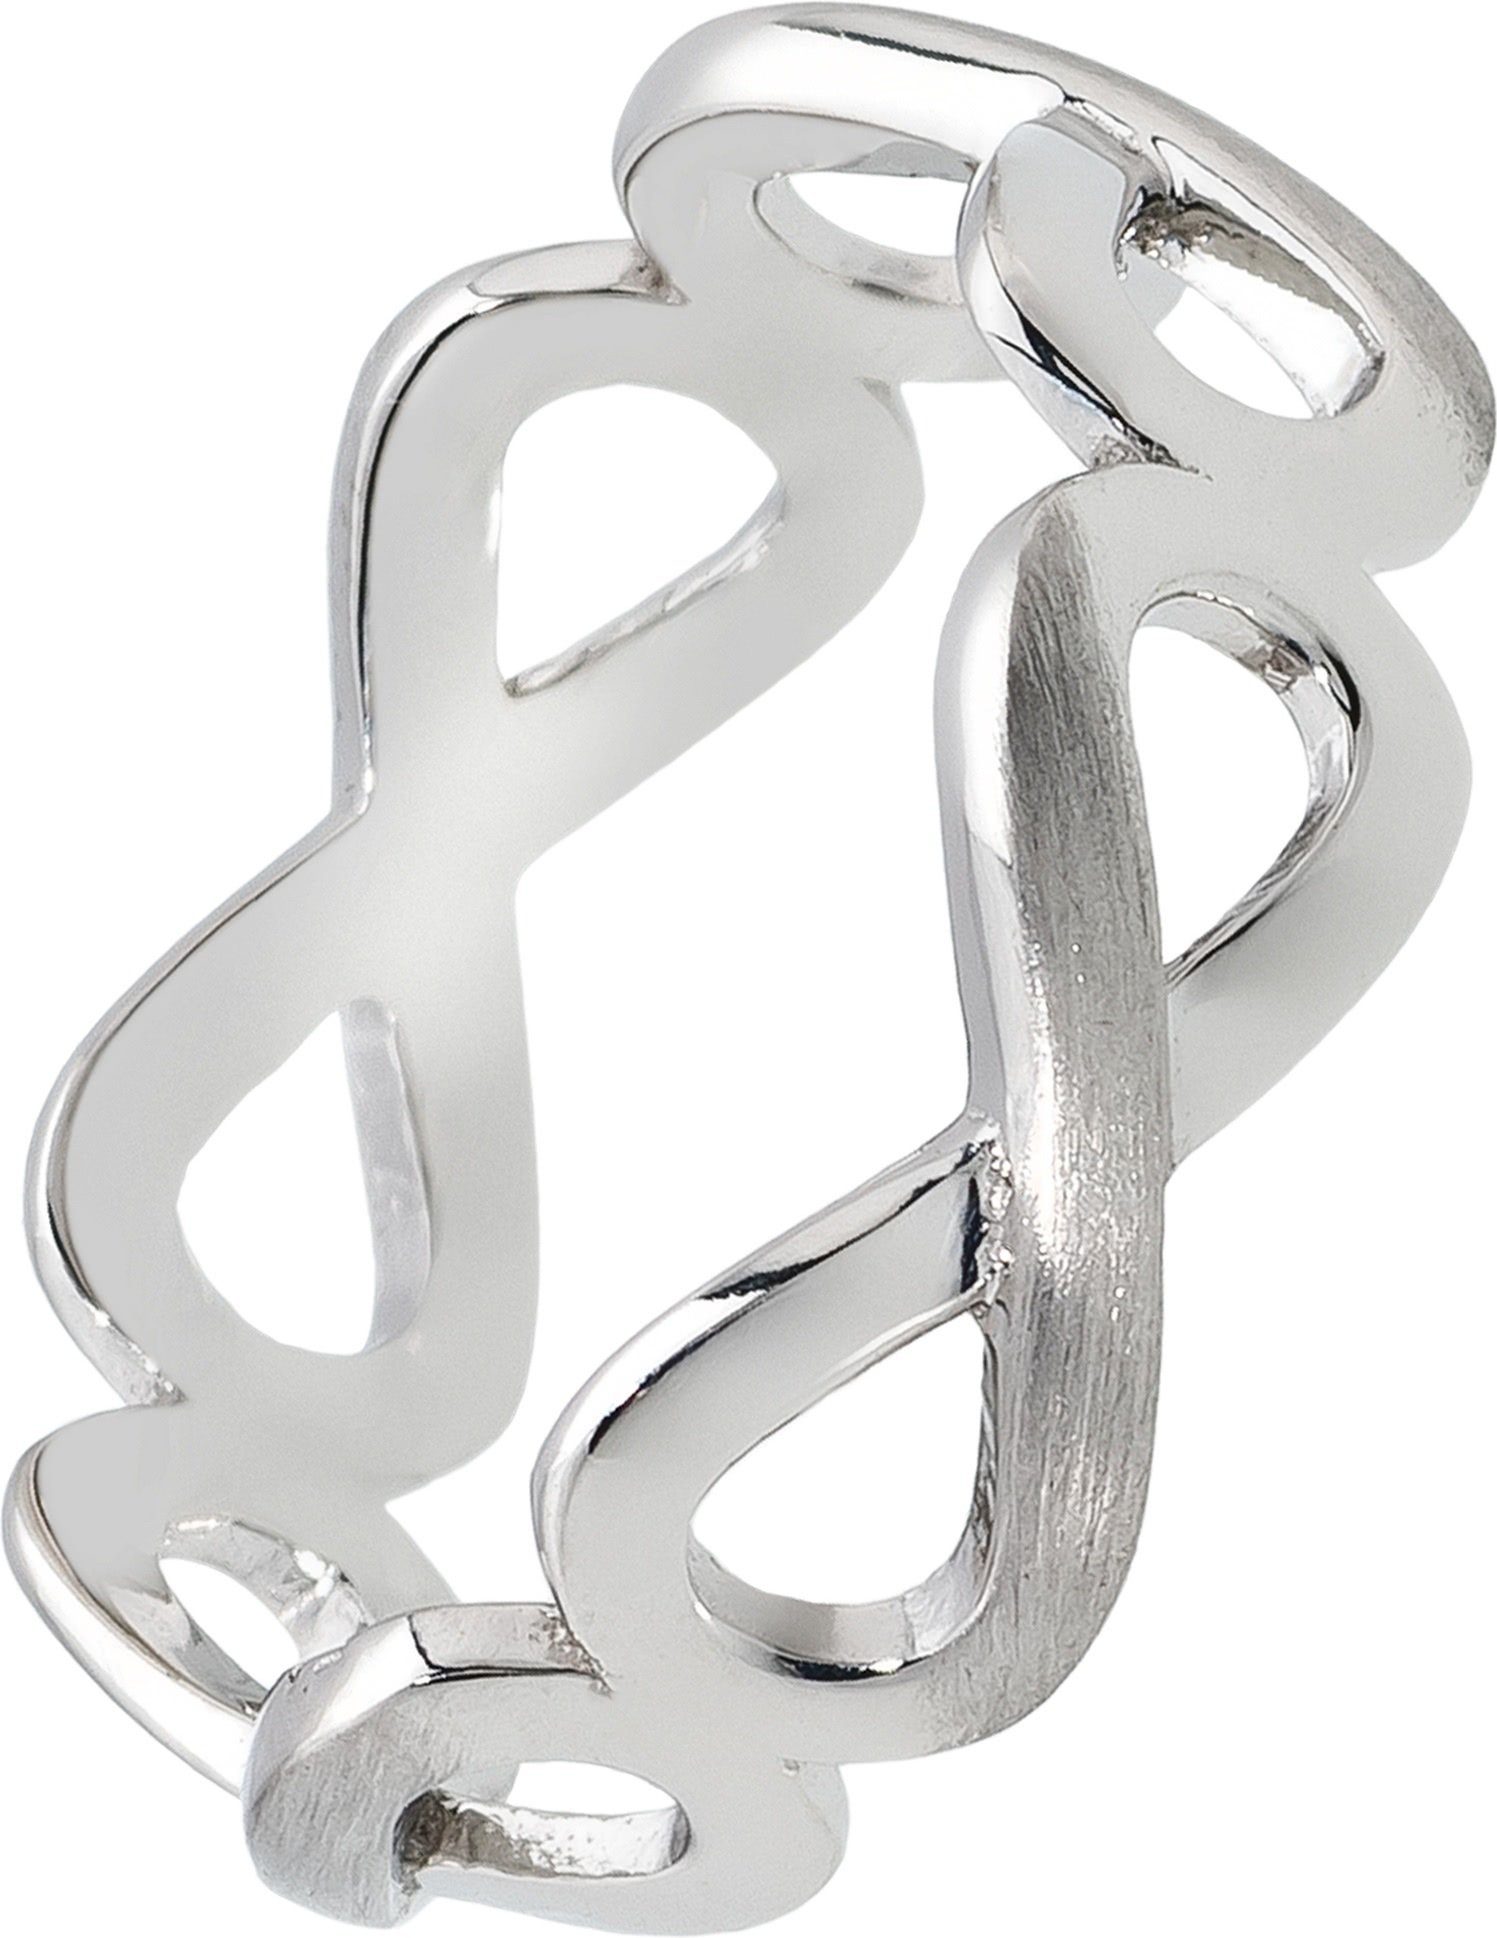 Balia Silberring Balia Ring für 925 Silber 58 Damen Größe (Unendlichkeit) (Fingerring), Fingerring Sterling (18,5), Silber mit